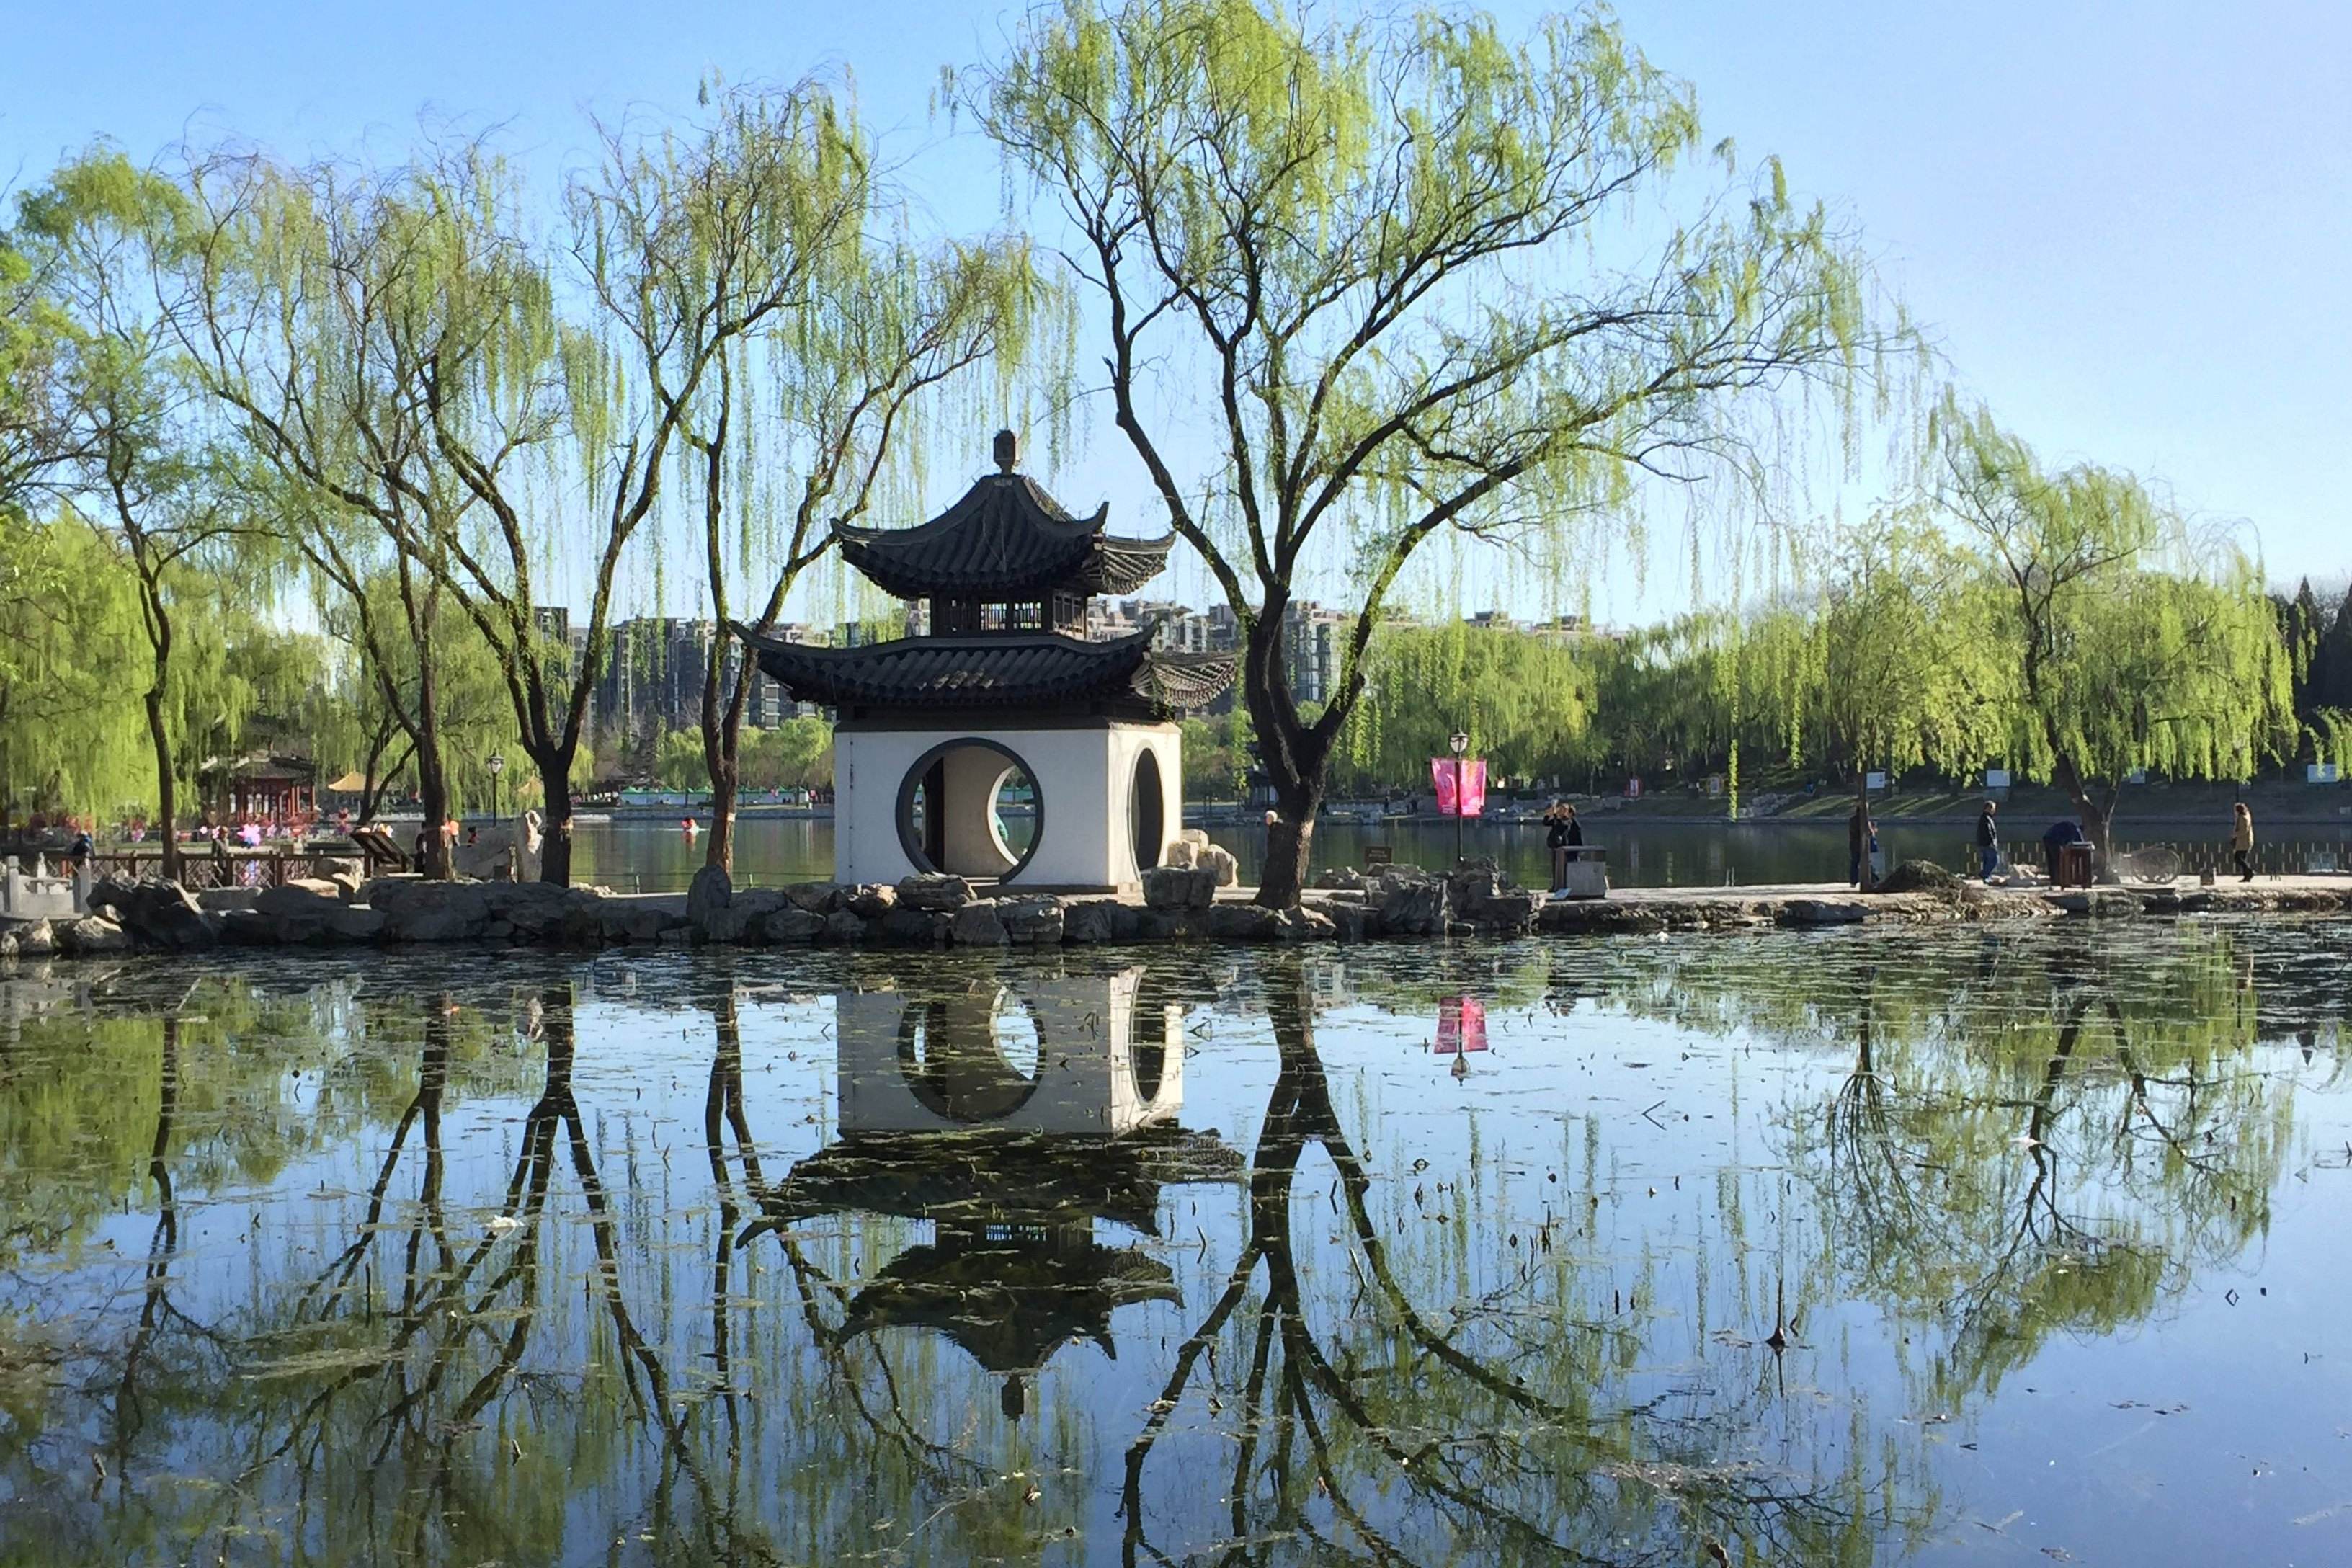 碧波荡漾 蓝天白云 近距离感受北京陶然亭公园 风景和人文历史